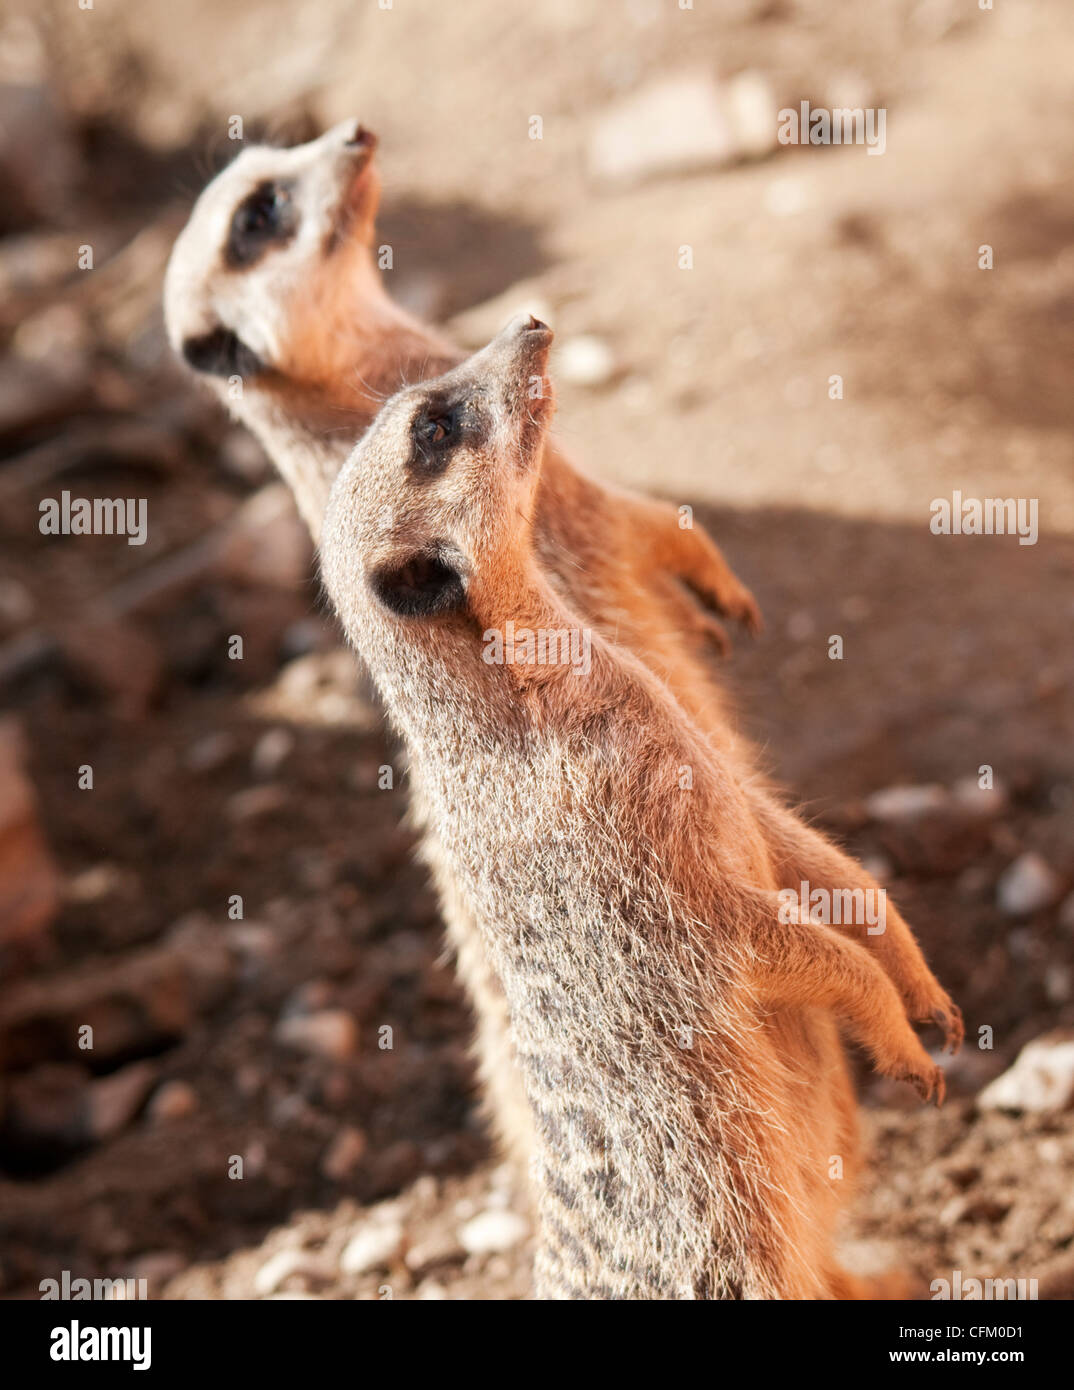 Meerkats on looking up Stock Photo